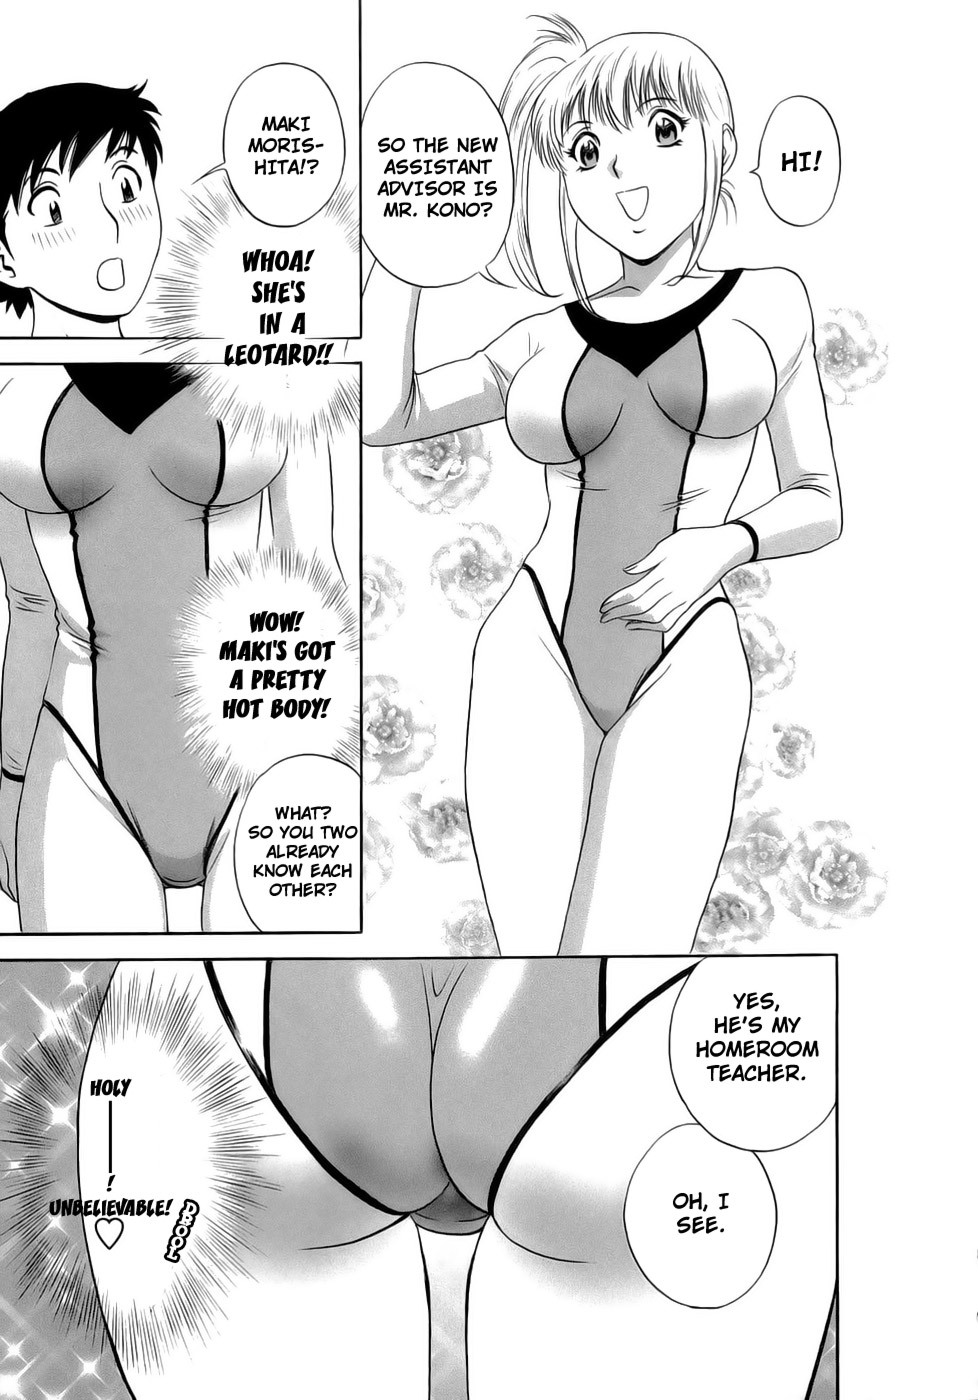 Mo-Retsu! Boin SenseiVol.1 38 hentai manga